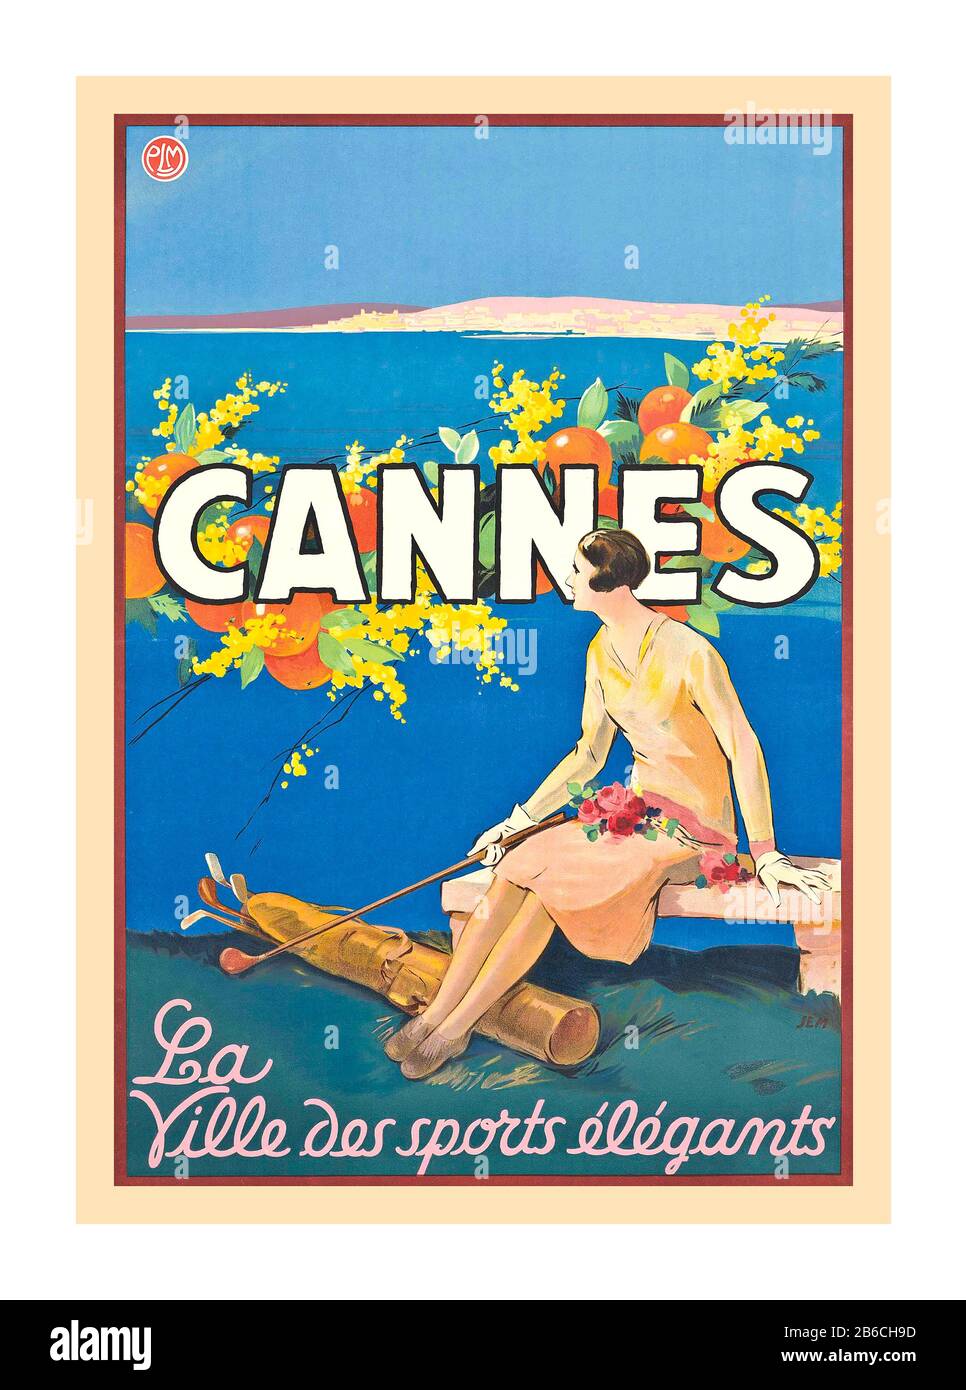 Cannes Vintage francés 1930 ilustración de cartel de viaje para Cannes, mostrando a una mujer que sostiene un club de golf y sentado sobre el mar Mediterráneo, ‘Cannes - la Ville des sports elegants’, CANNES LA CIUDAD DE LOS DEPORTES ELEGANTES 1930. Foto de stock